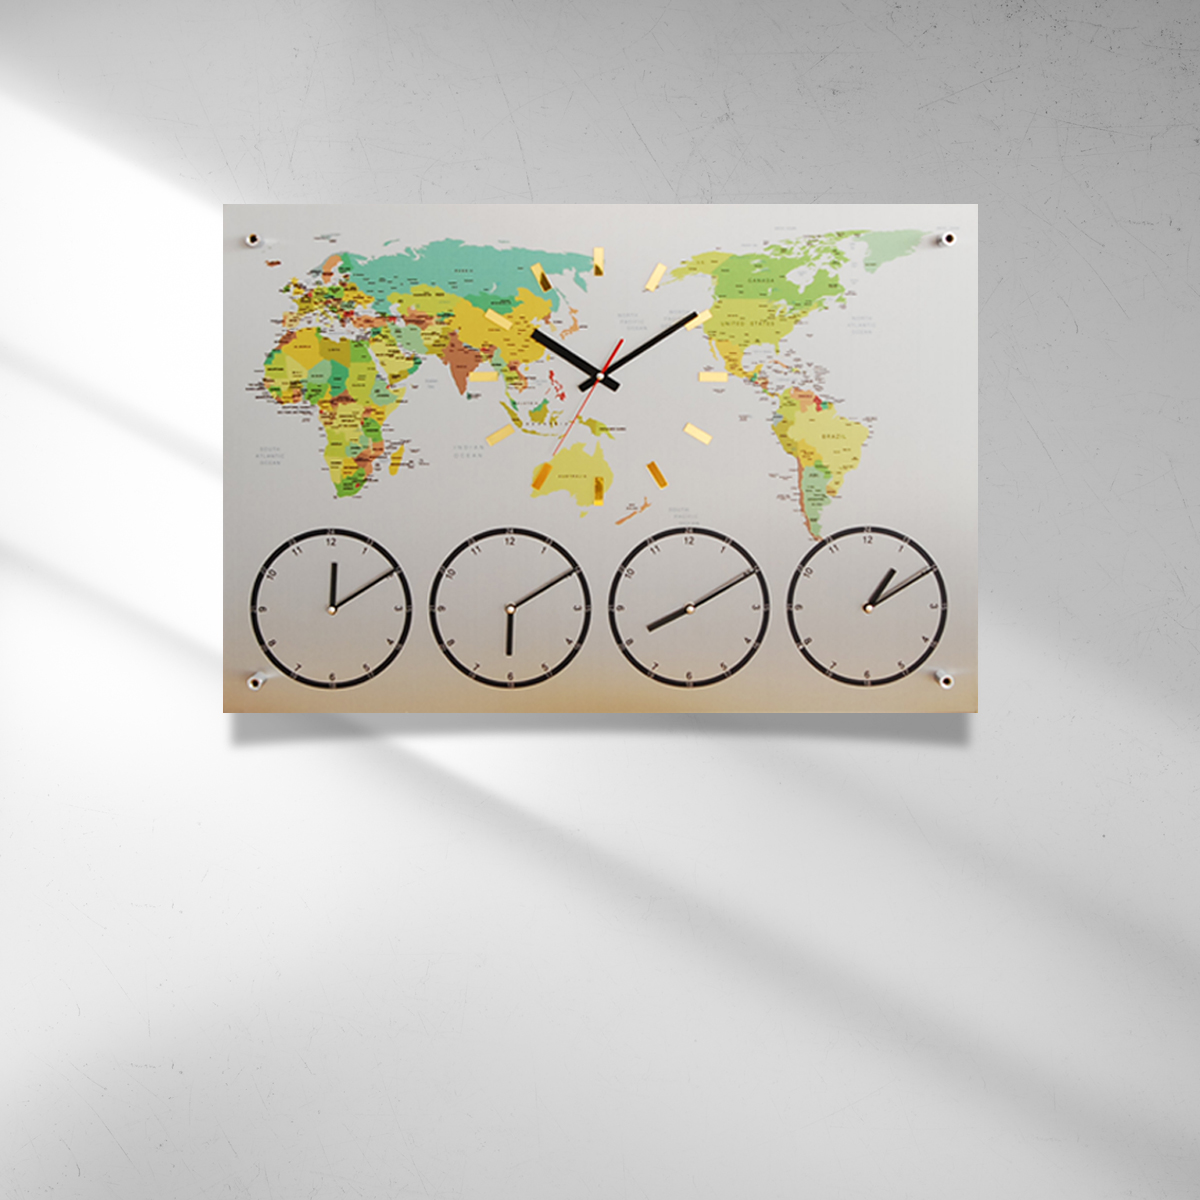 국산제작정품 월드타임벽시계-중형 100cm 다국적세계벽시계 세계시간표시